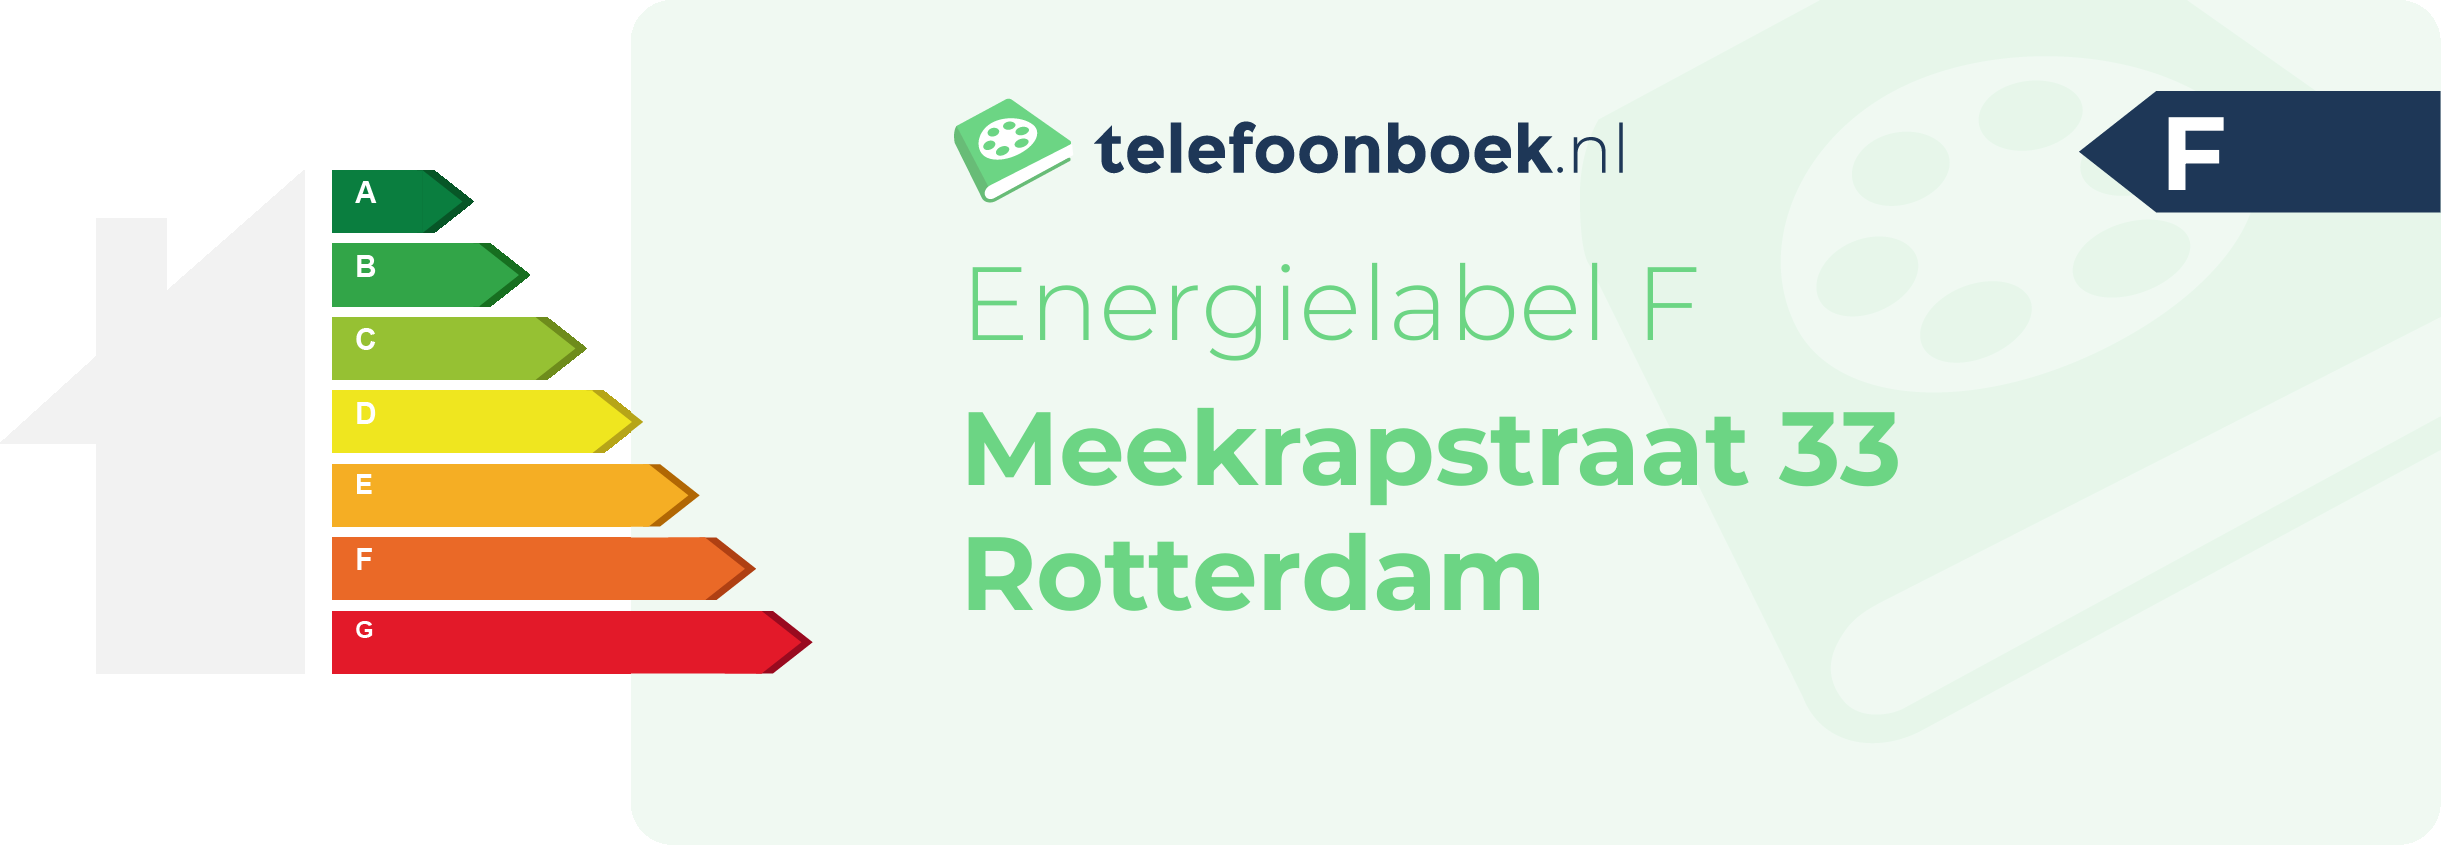 Energielabel Meekrapstraat 33 Rotterdam